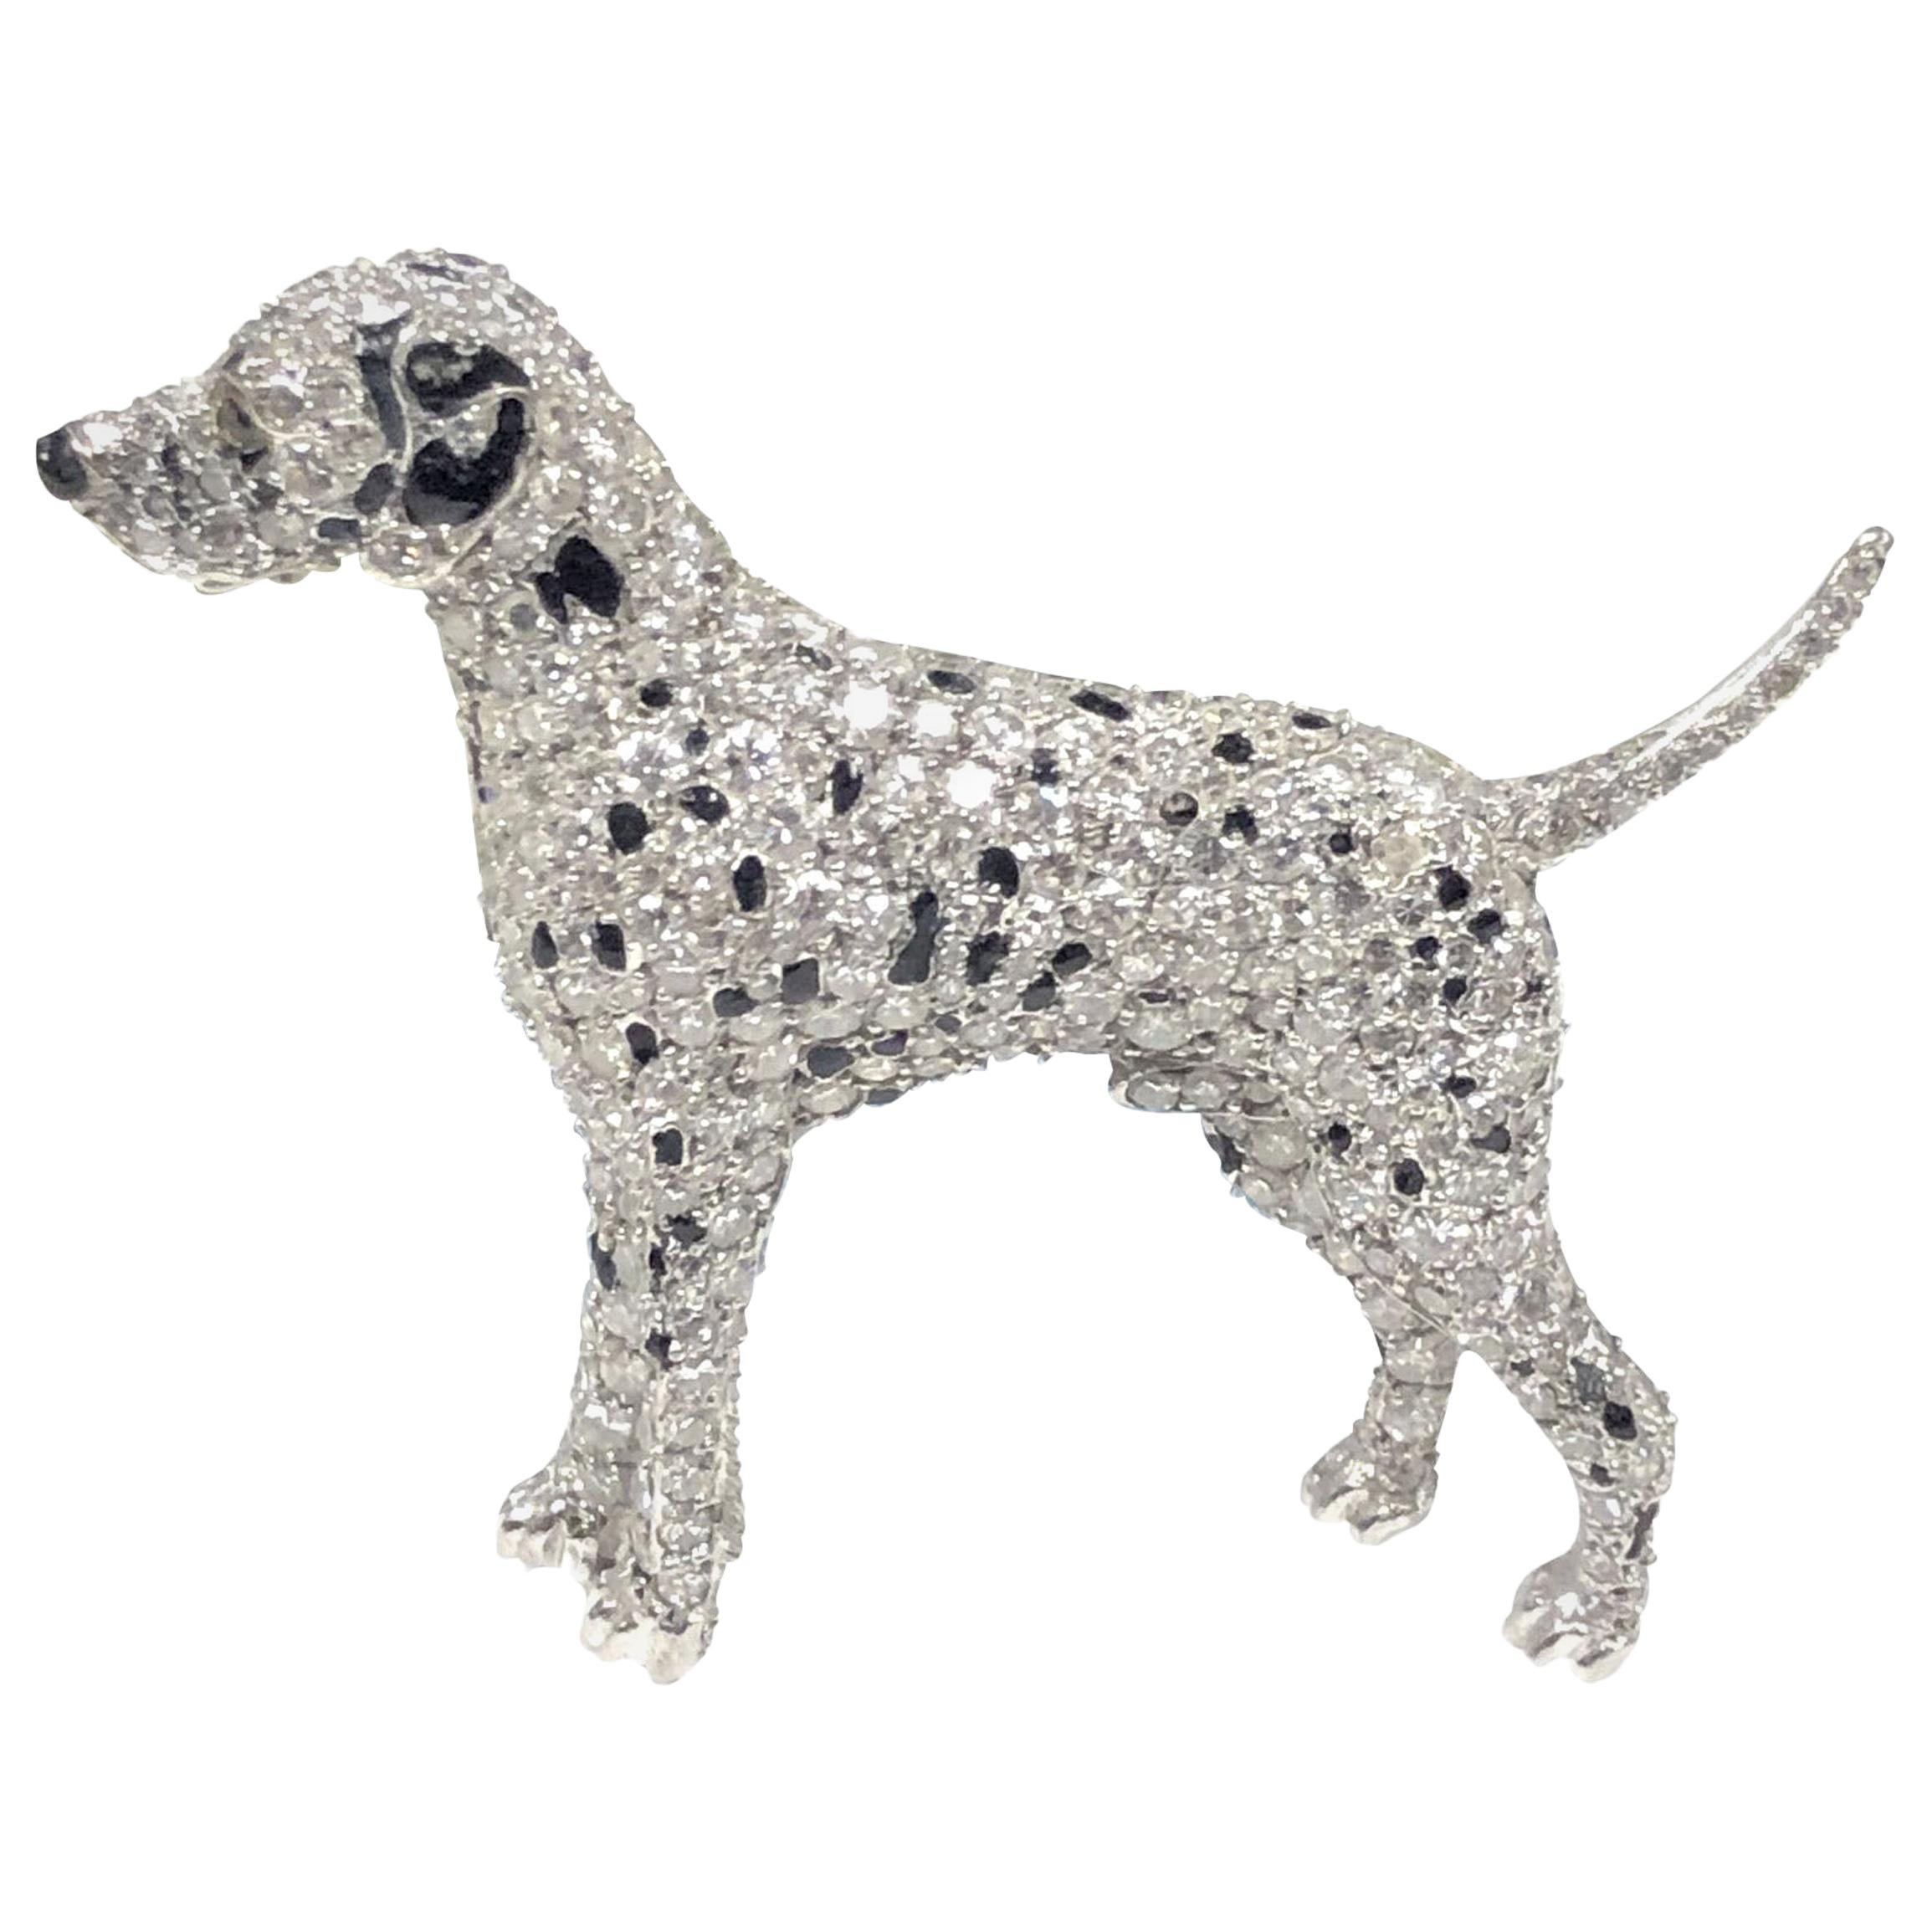 Ruser Platinum and Diamond Exquisite 1940s Dalmatian Dog Brooch